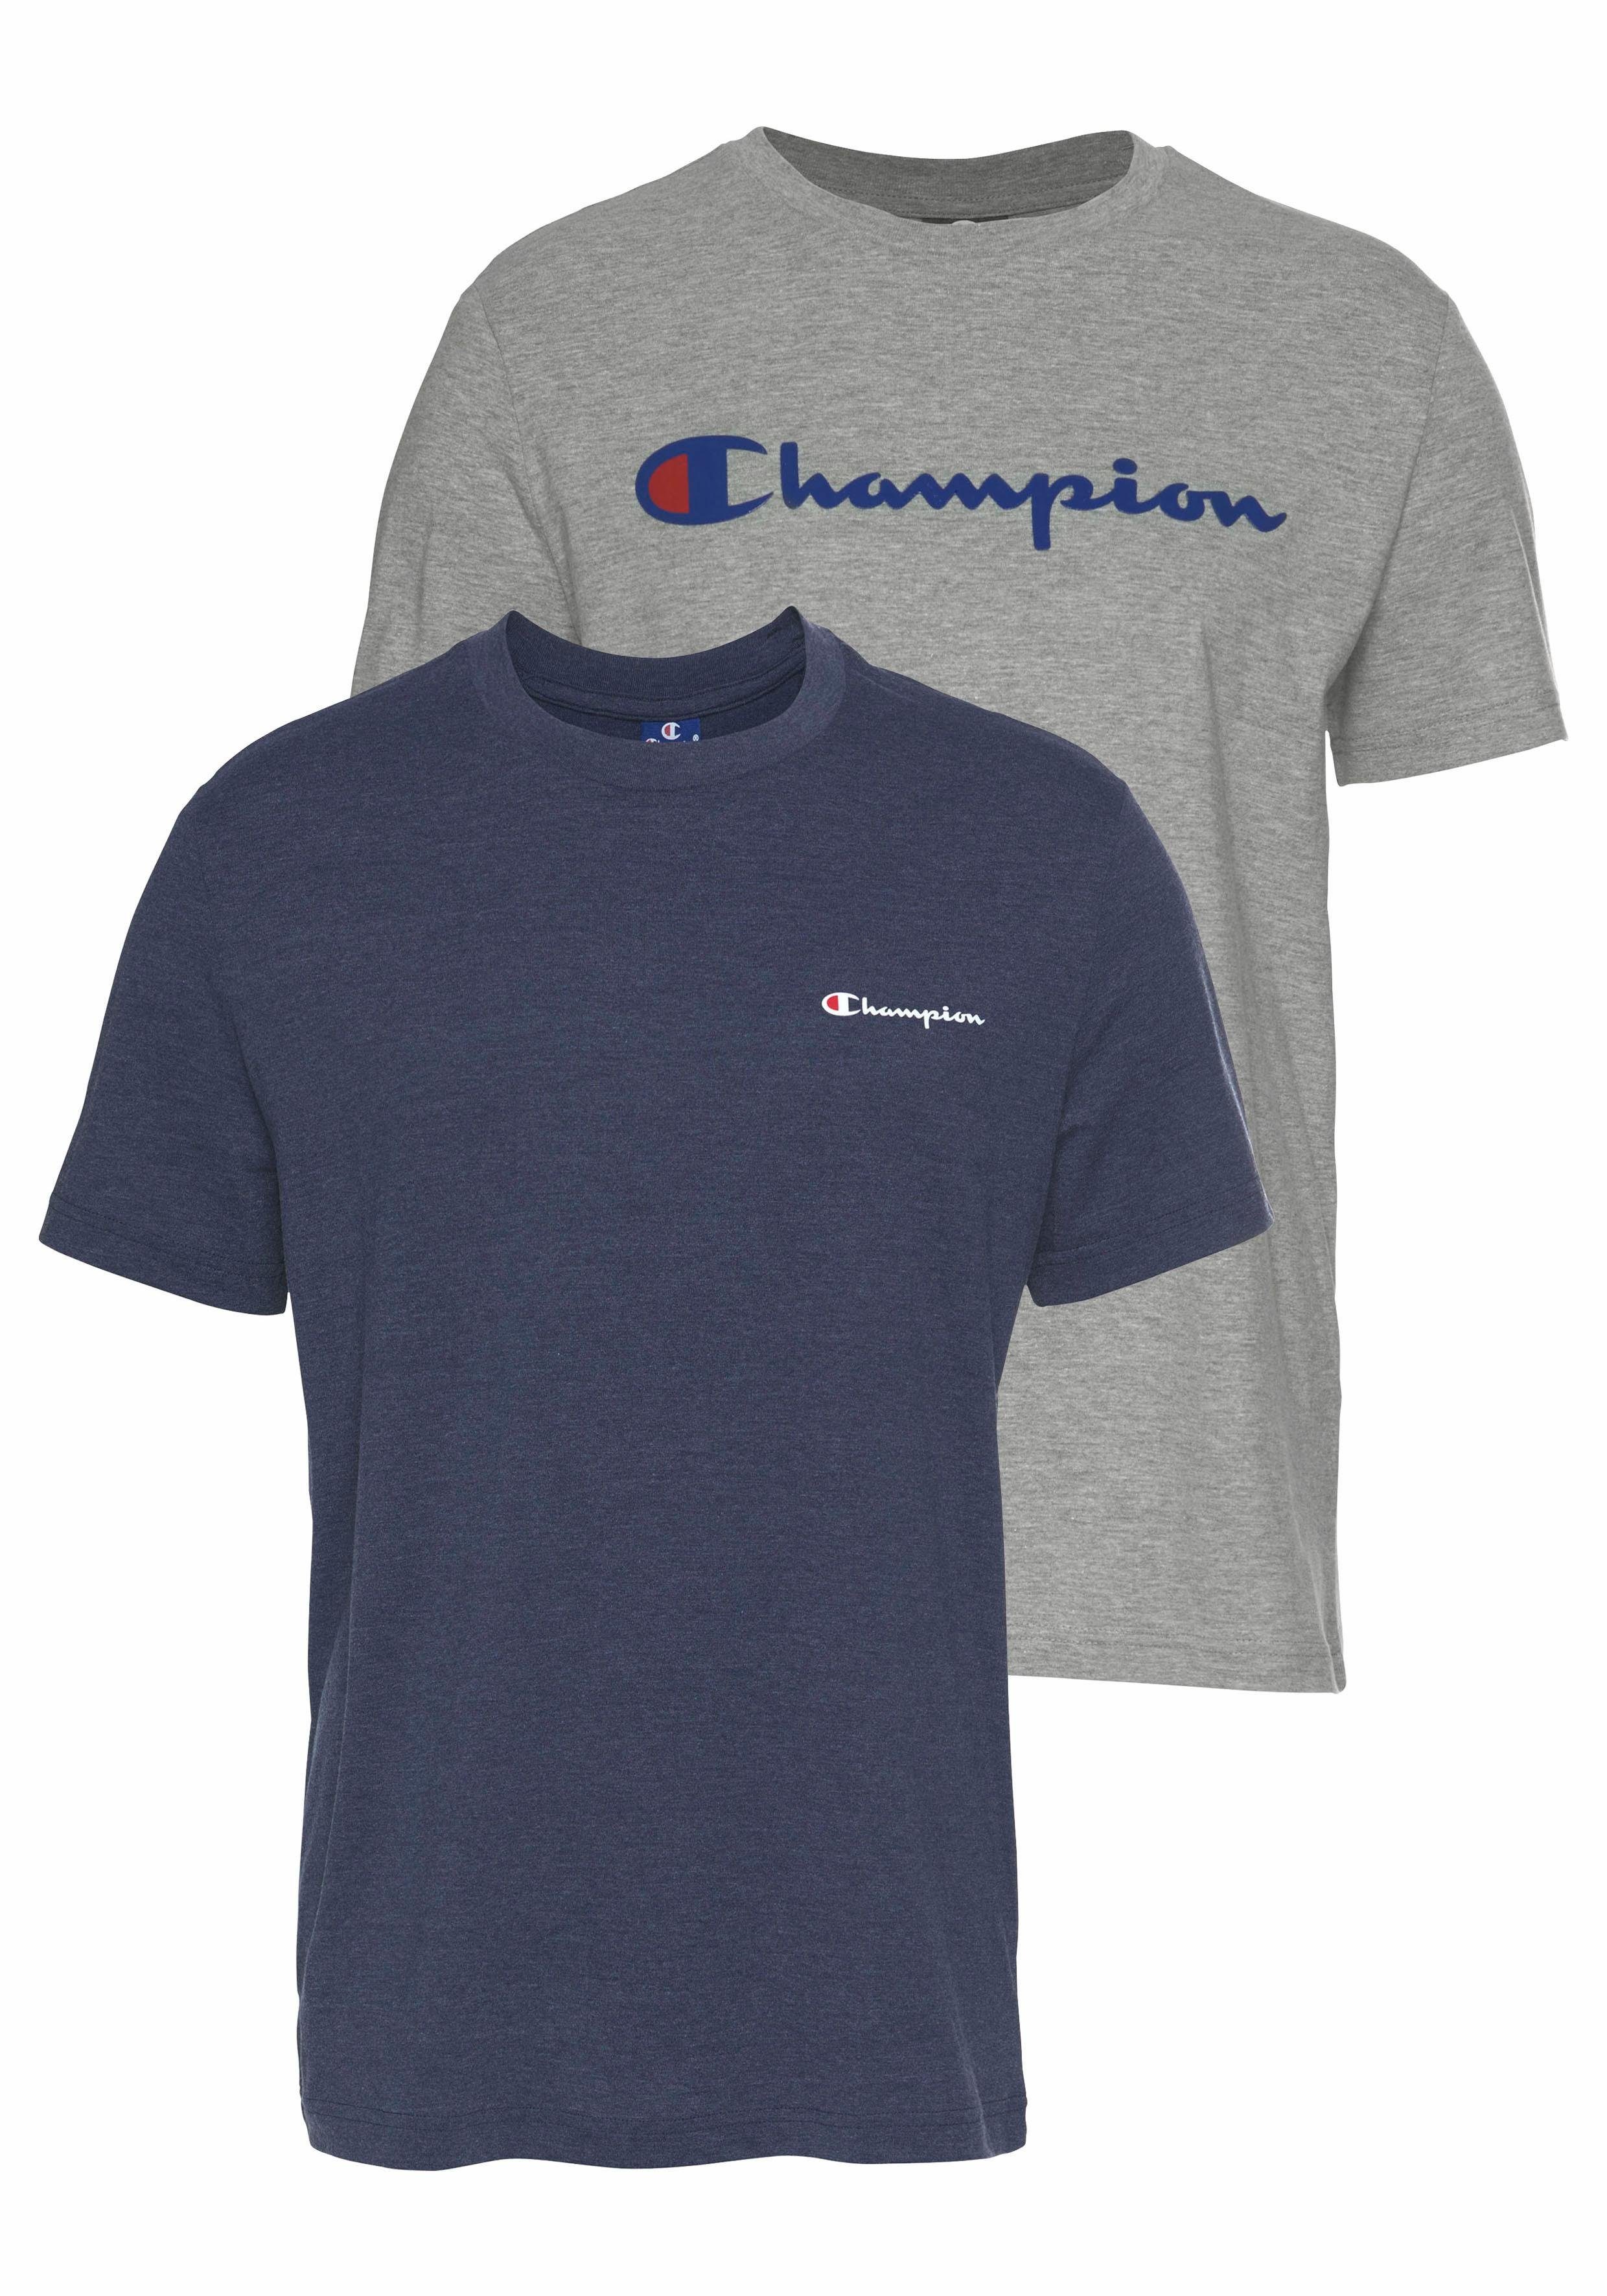 Otto - Champion NU 15% KORTING: Champion T-shirt